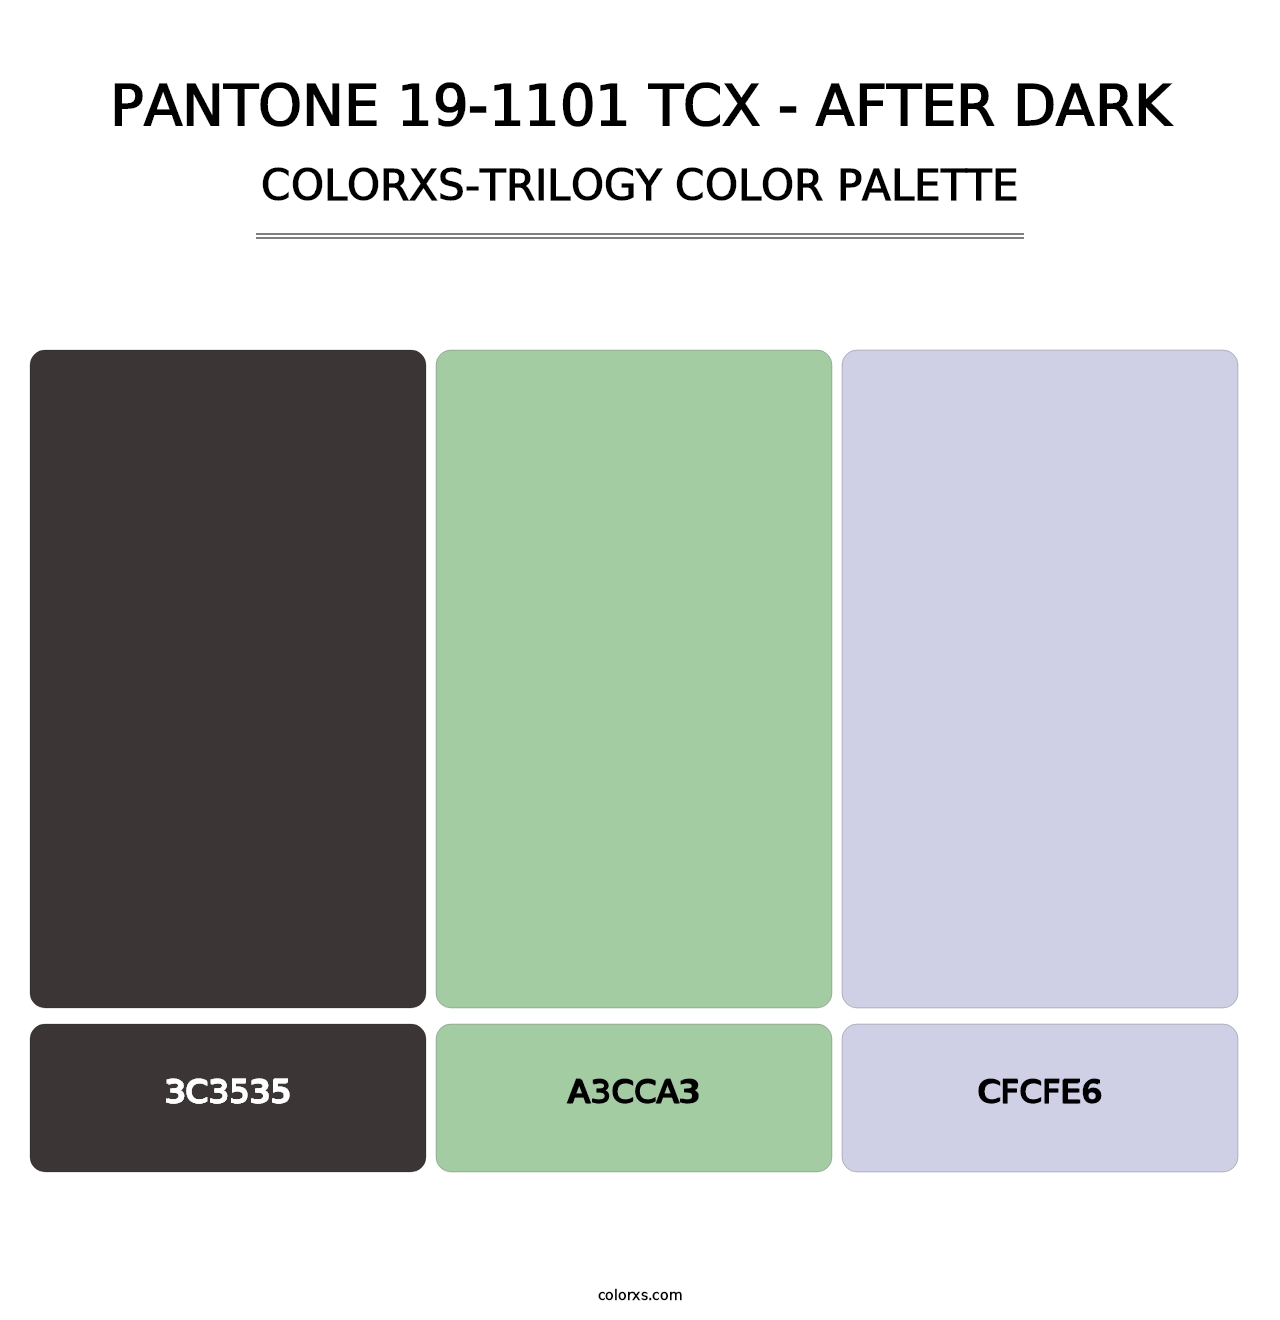 PANTONE 19-1101 TCX - After Dark - Colorxs Trilogy Palette